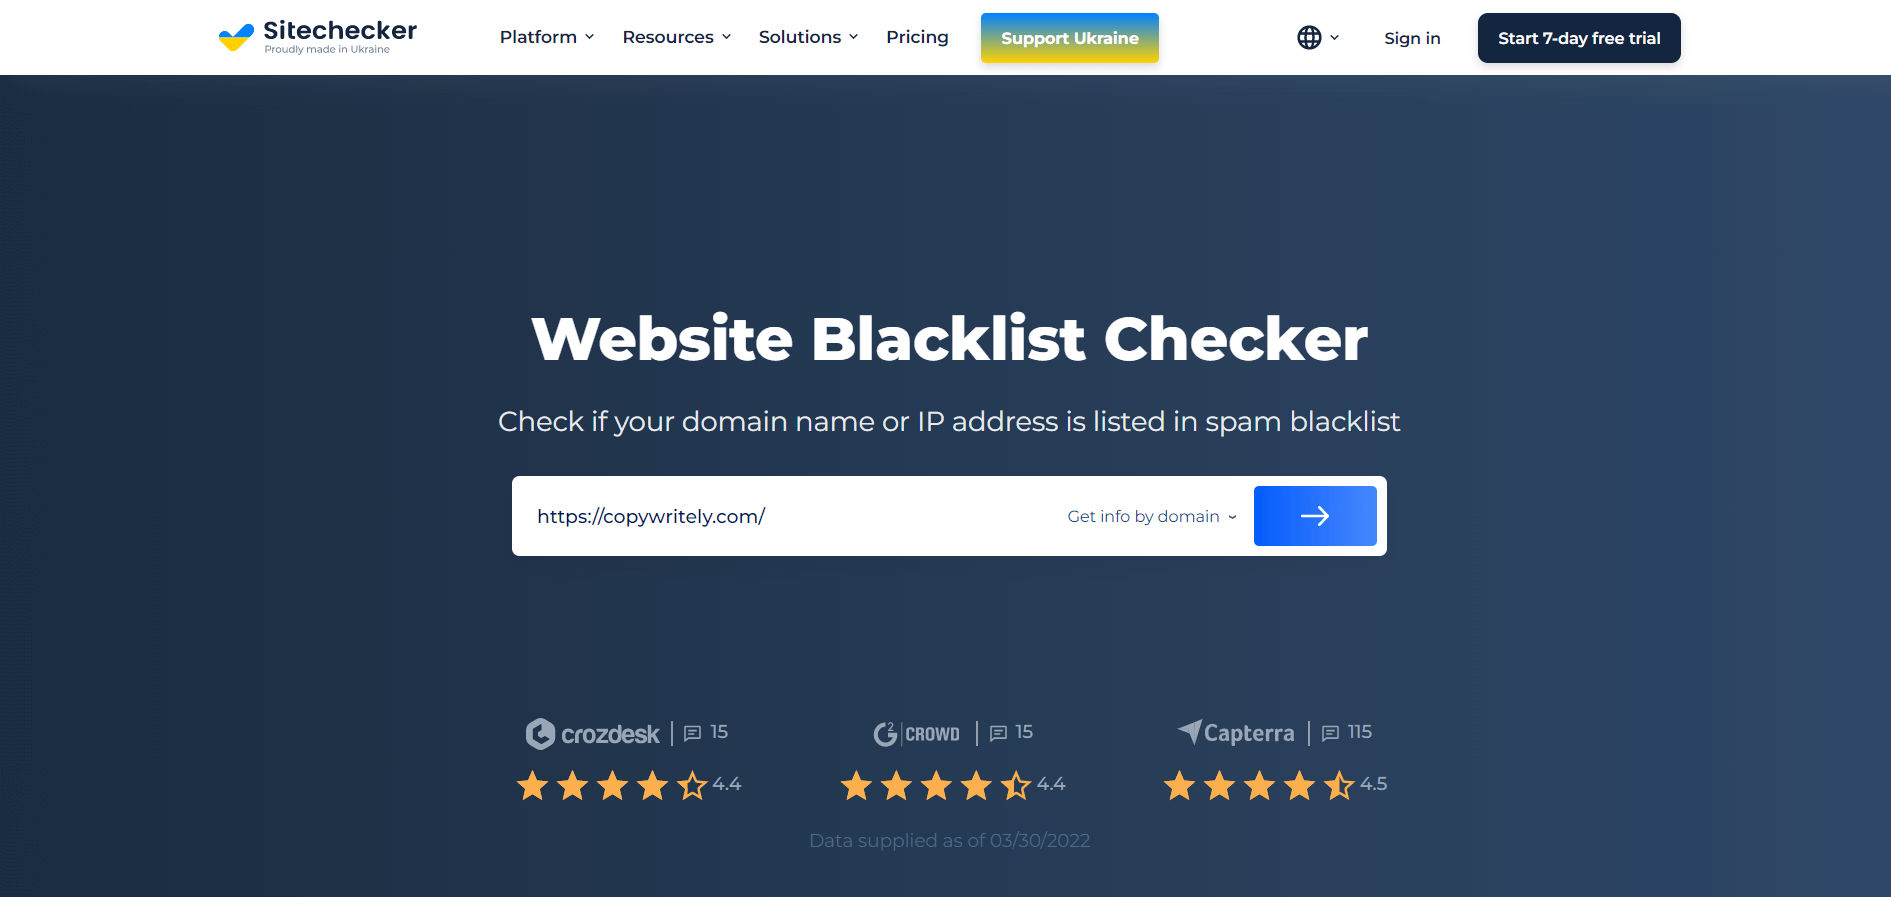 Vérificateur de liste noire de Sitechecker - vérifiez si l'adresse IP est sur liste noire en testant l'adresse IP du serveur de messagerie